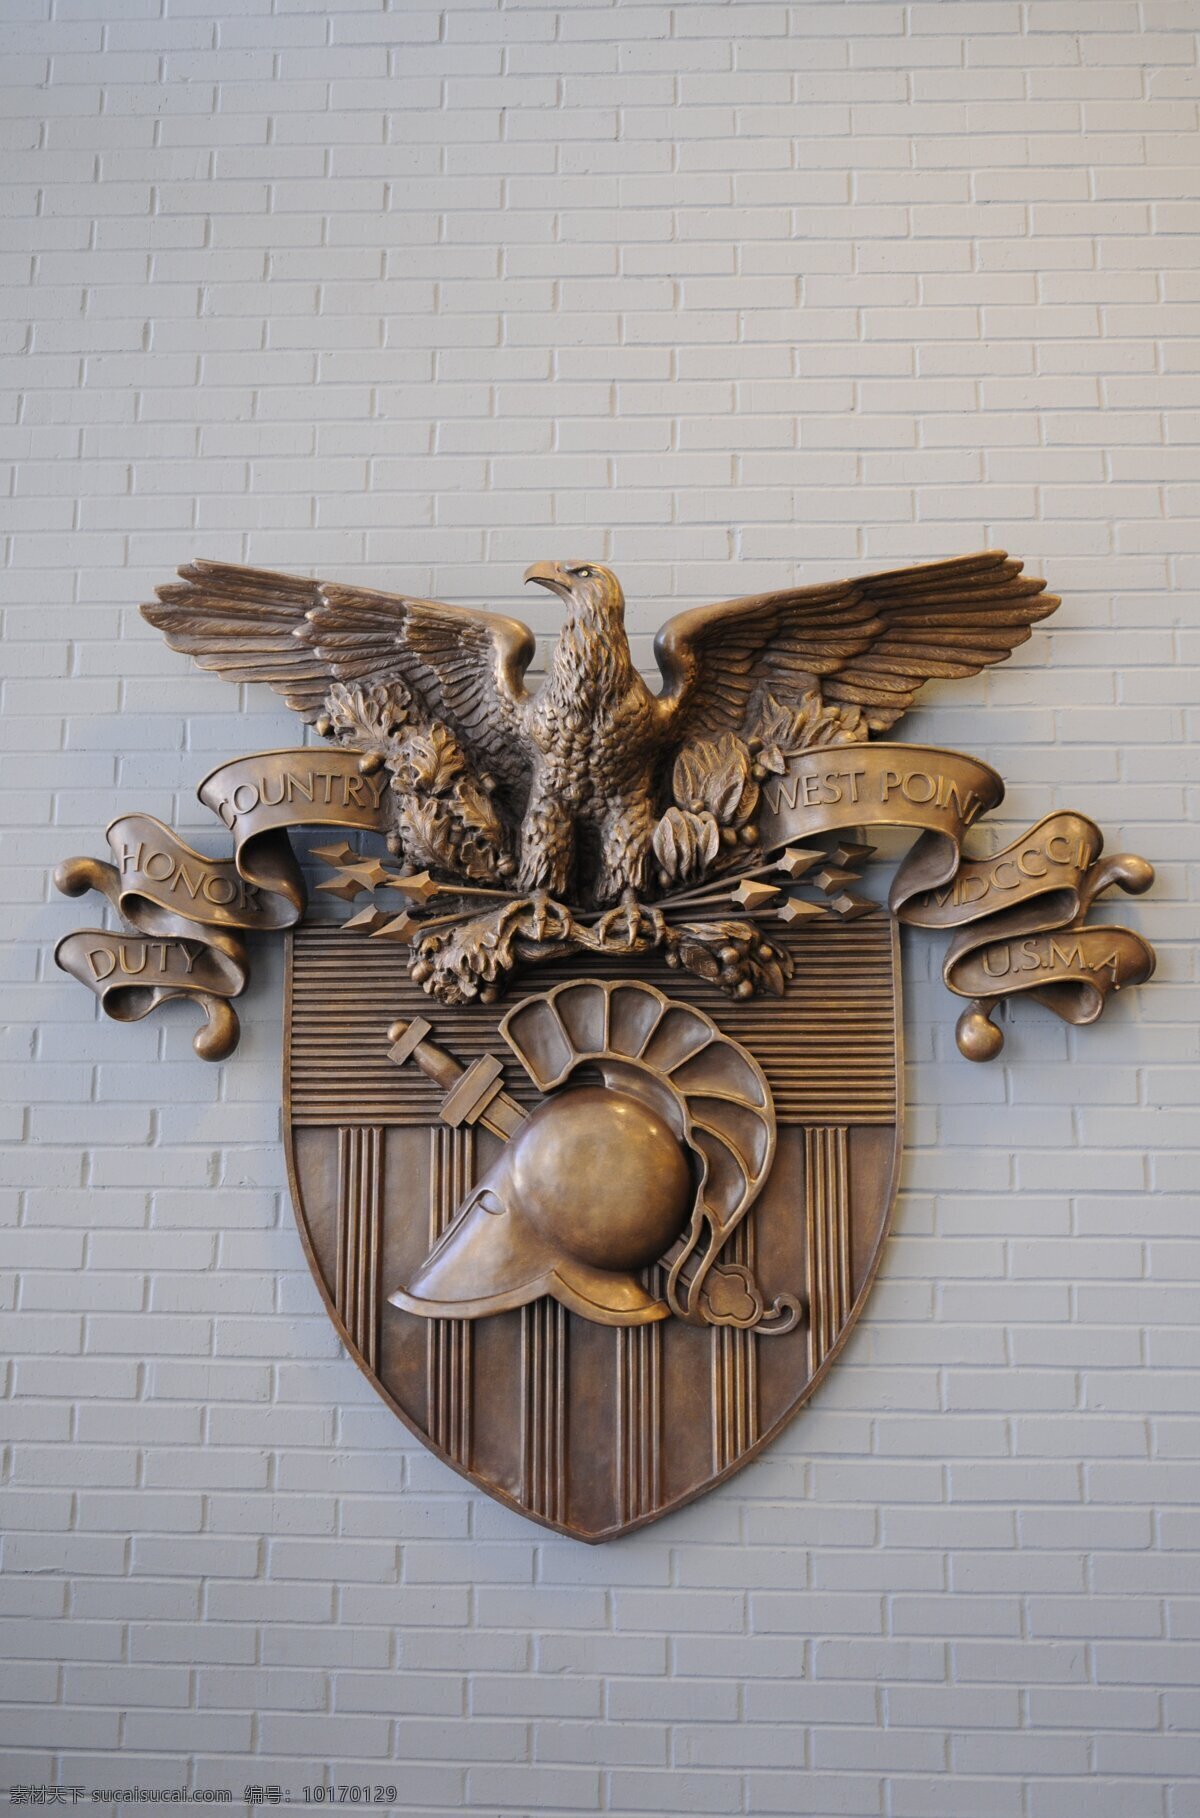 美国西点军校 校徽 美国 西点军校 美国军事学院 军事 人文景观 旅游摄影